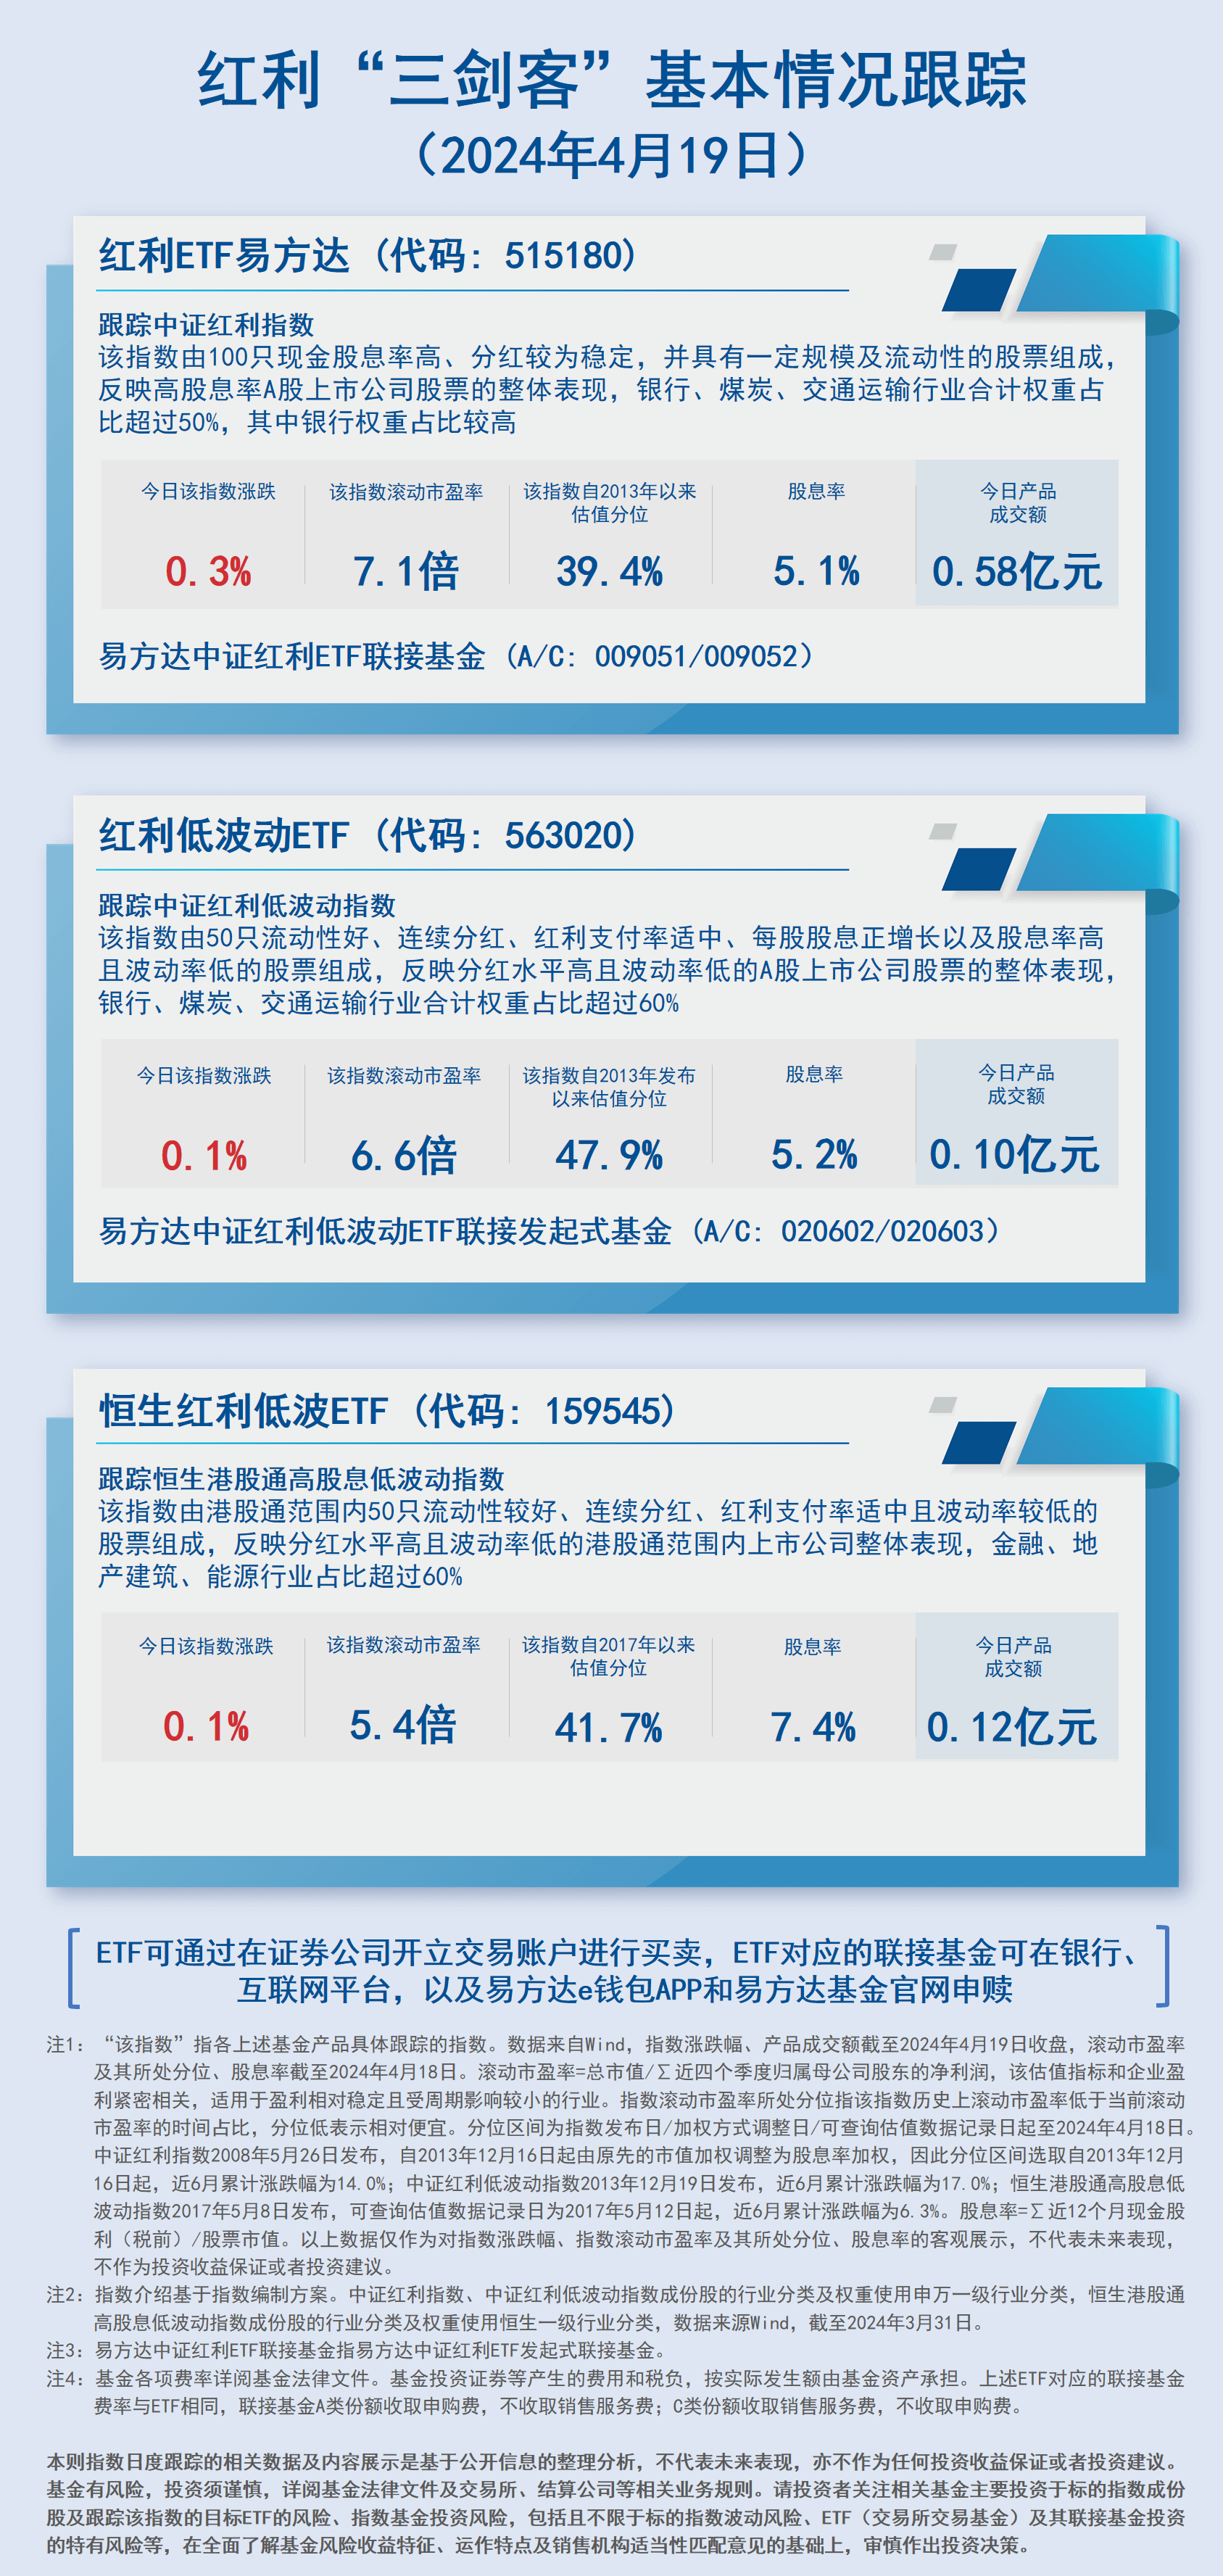 07.红利三剑客-日报蓝色_20240419